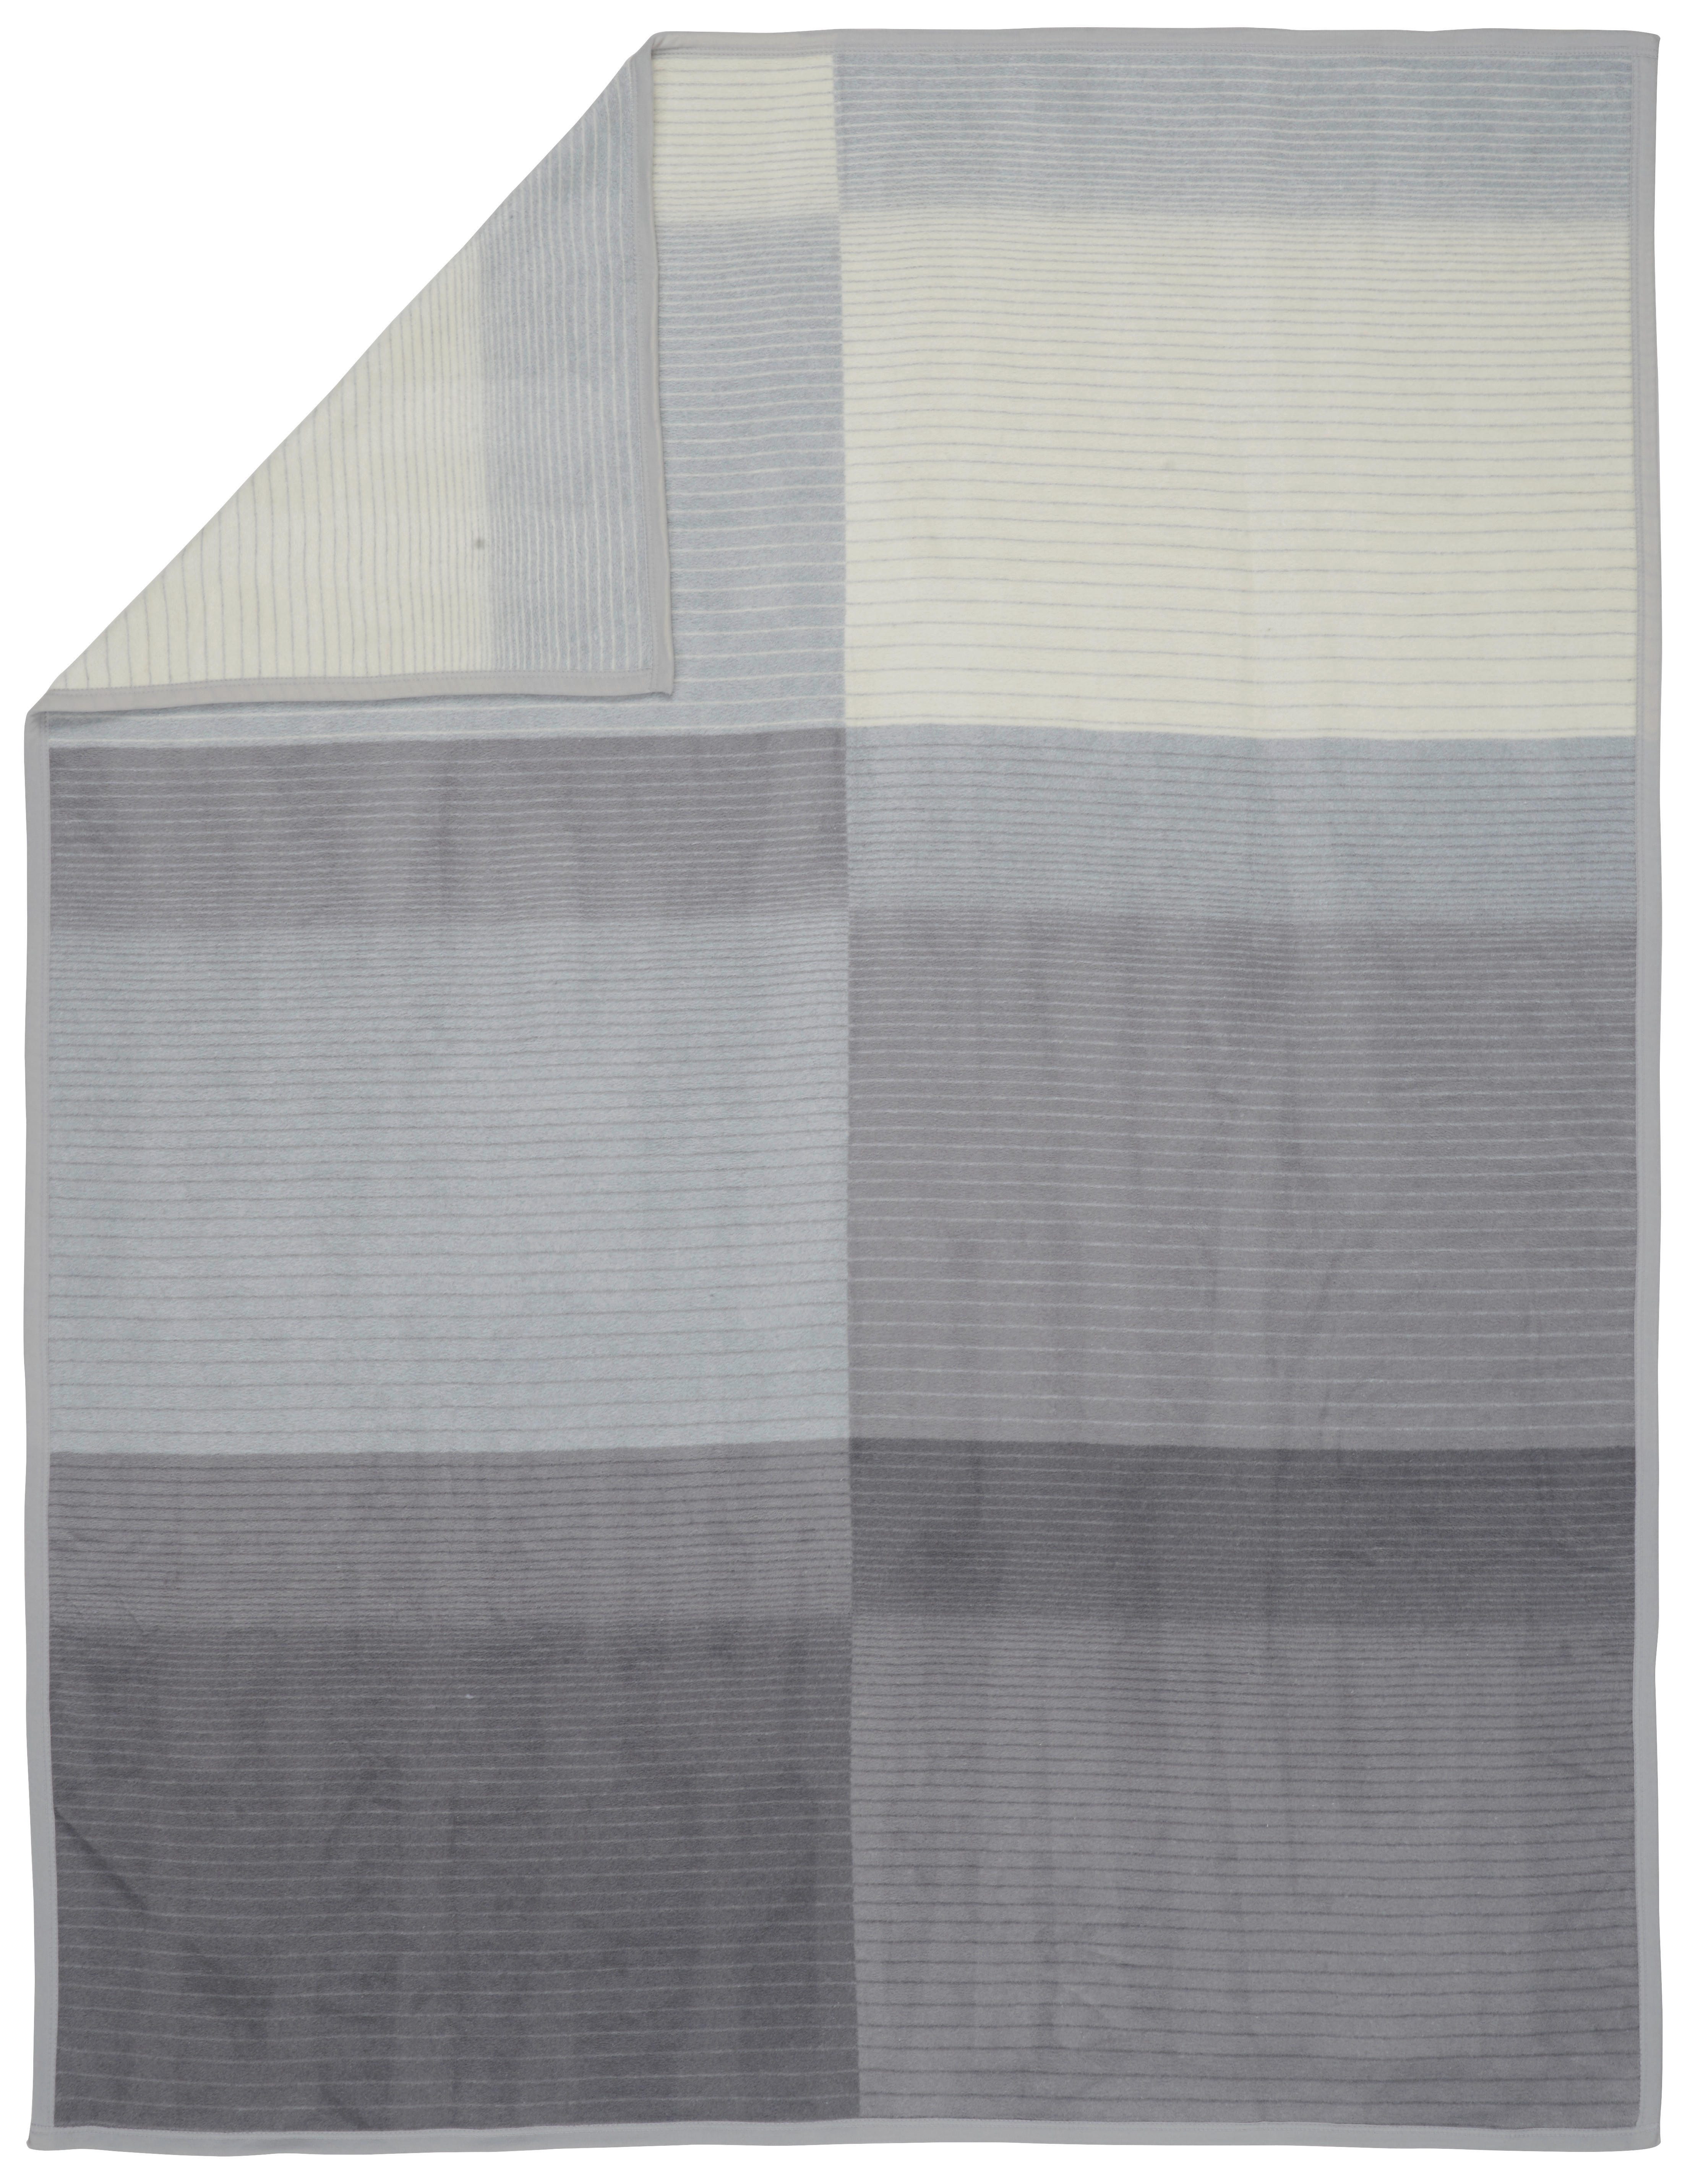 PLAID Narvik 150/200 cm  - Anthrazit/Grau, Basics, Textil (150/200cm) - Novel